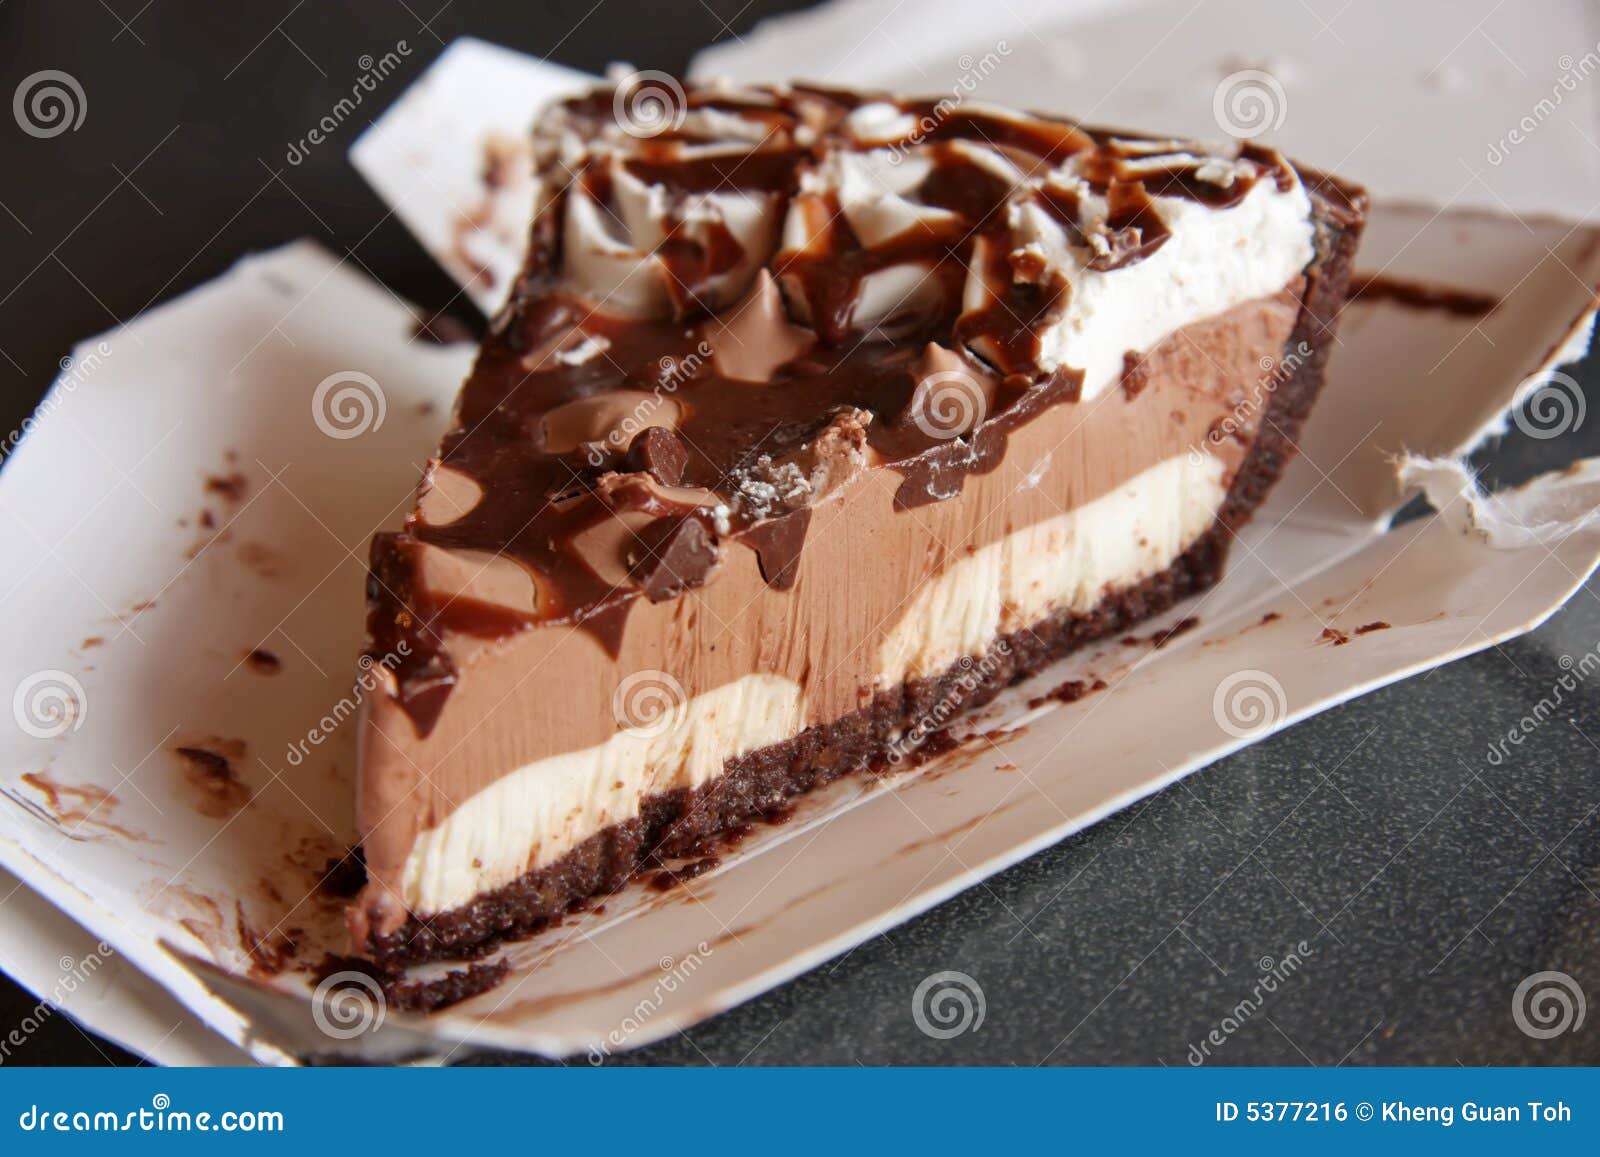 chocolate-pie-5377216.jpg